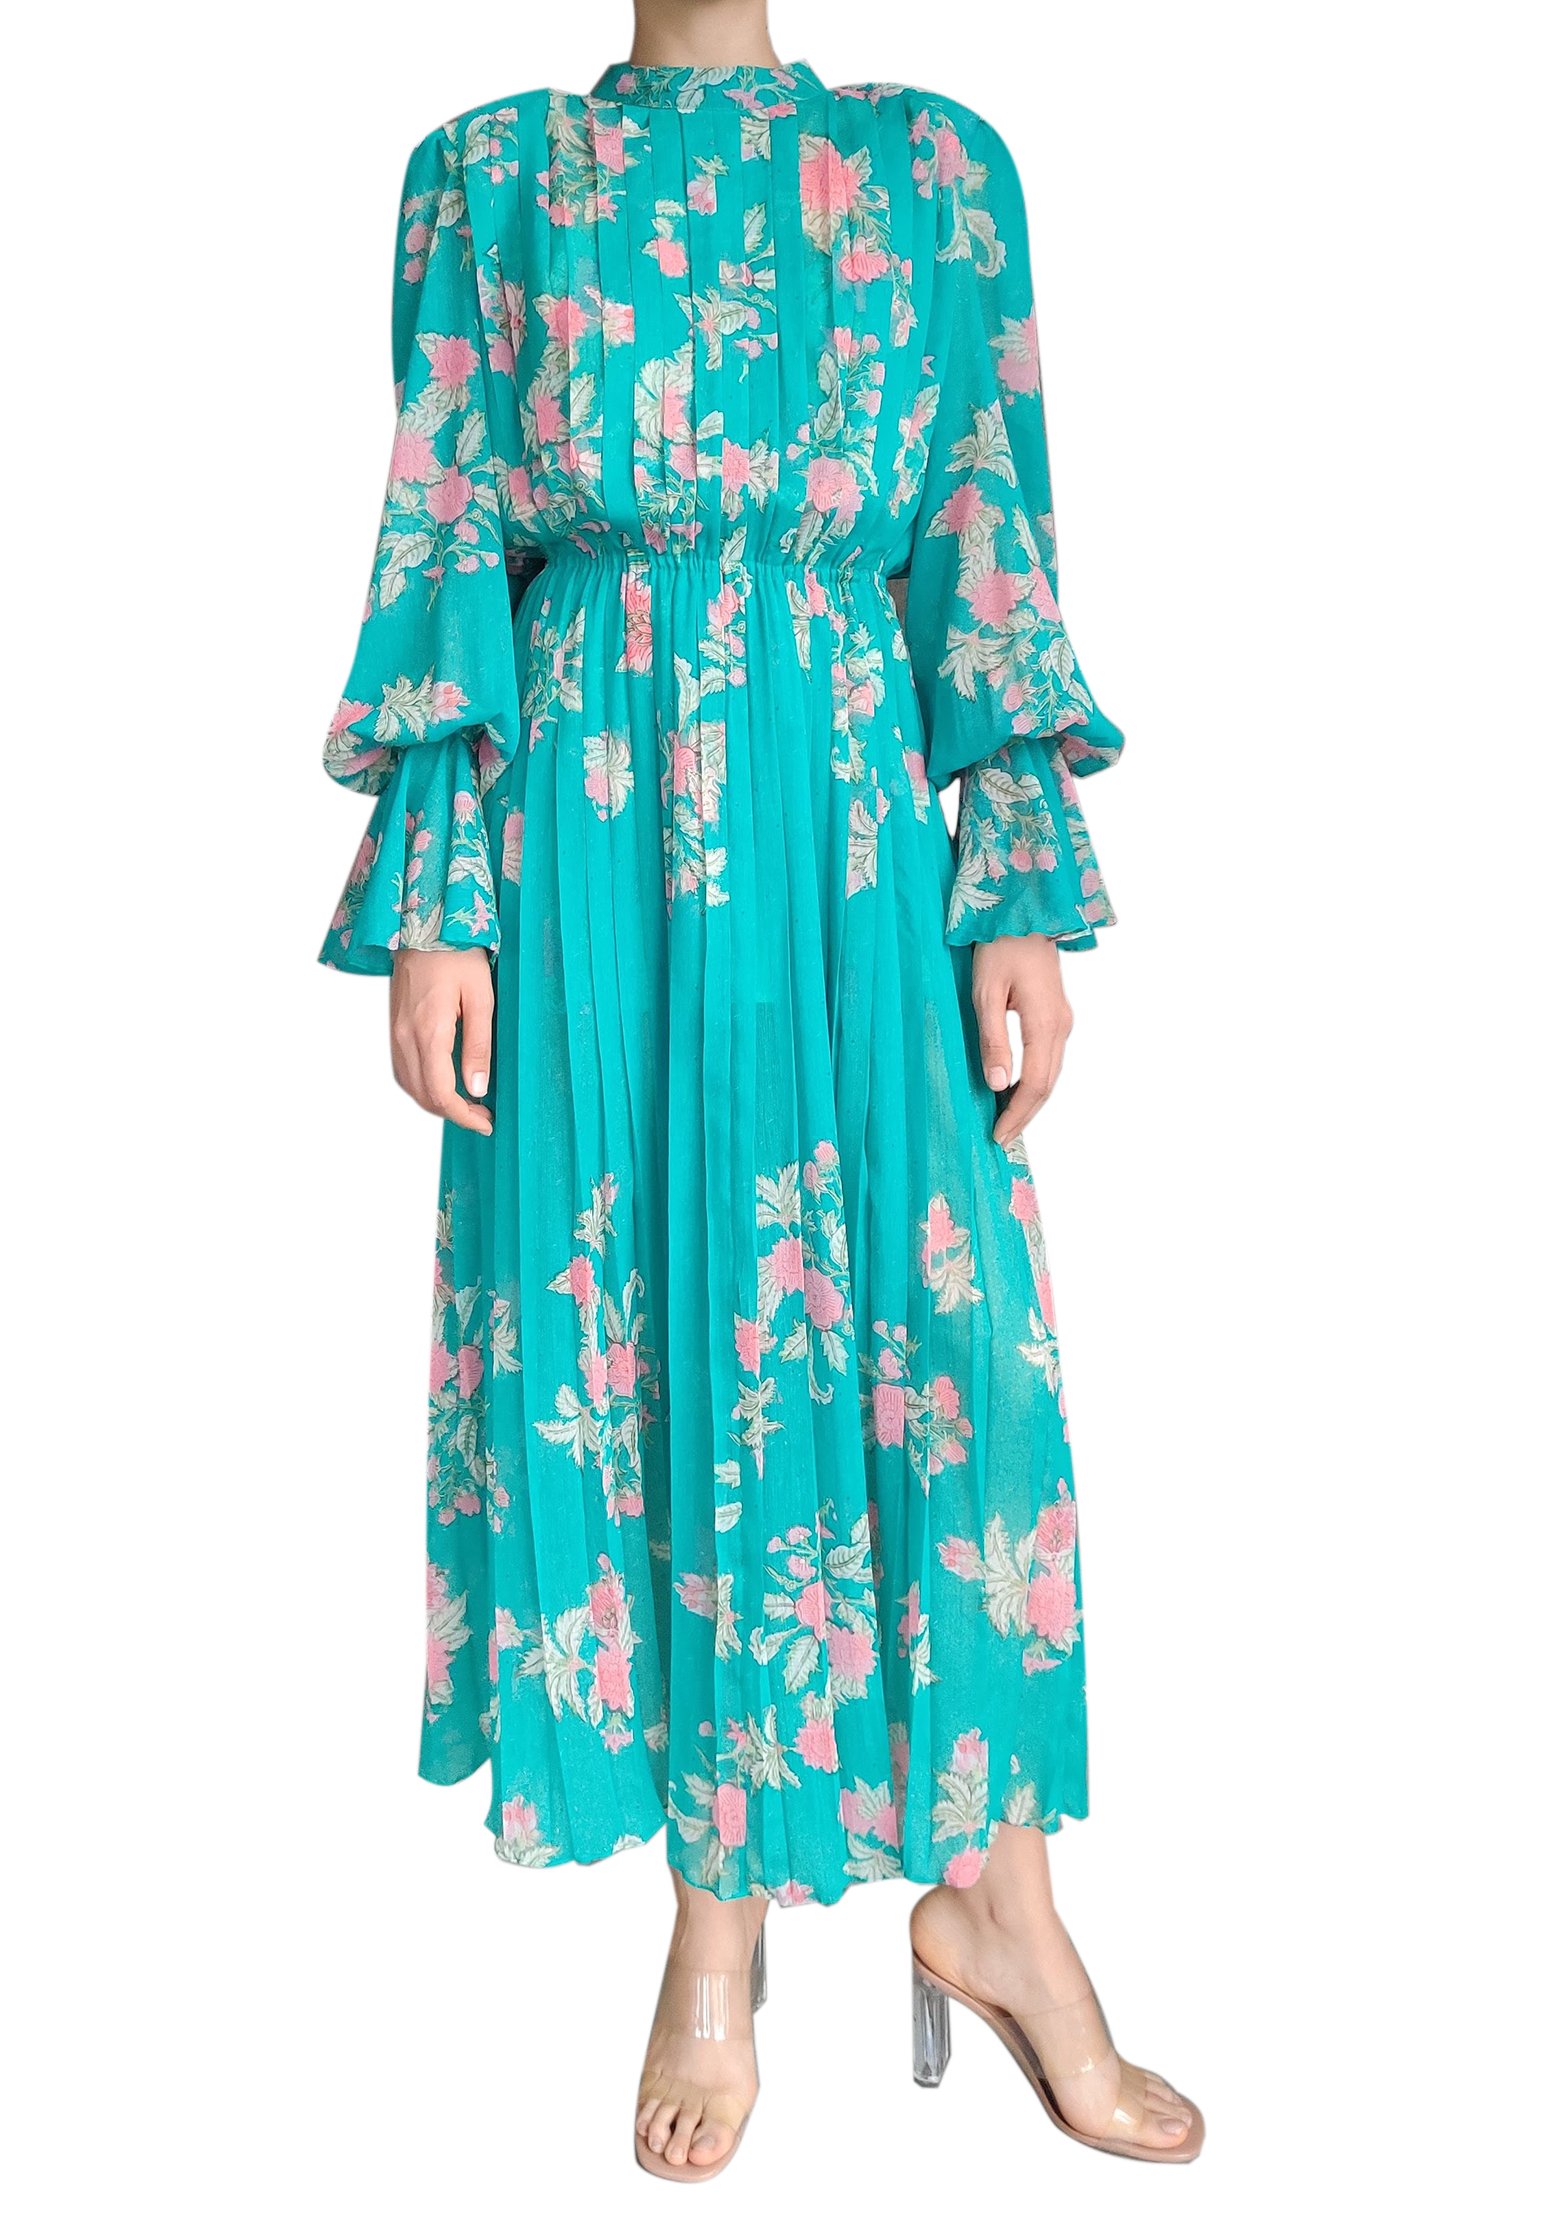 Dress HEMANT&NANDITA Color: green (Code: 748) in online store Allure